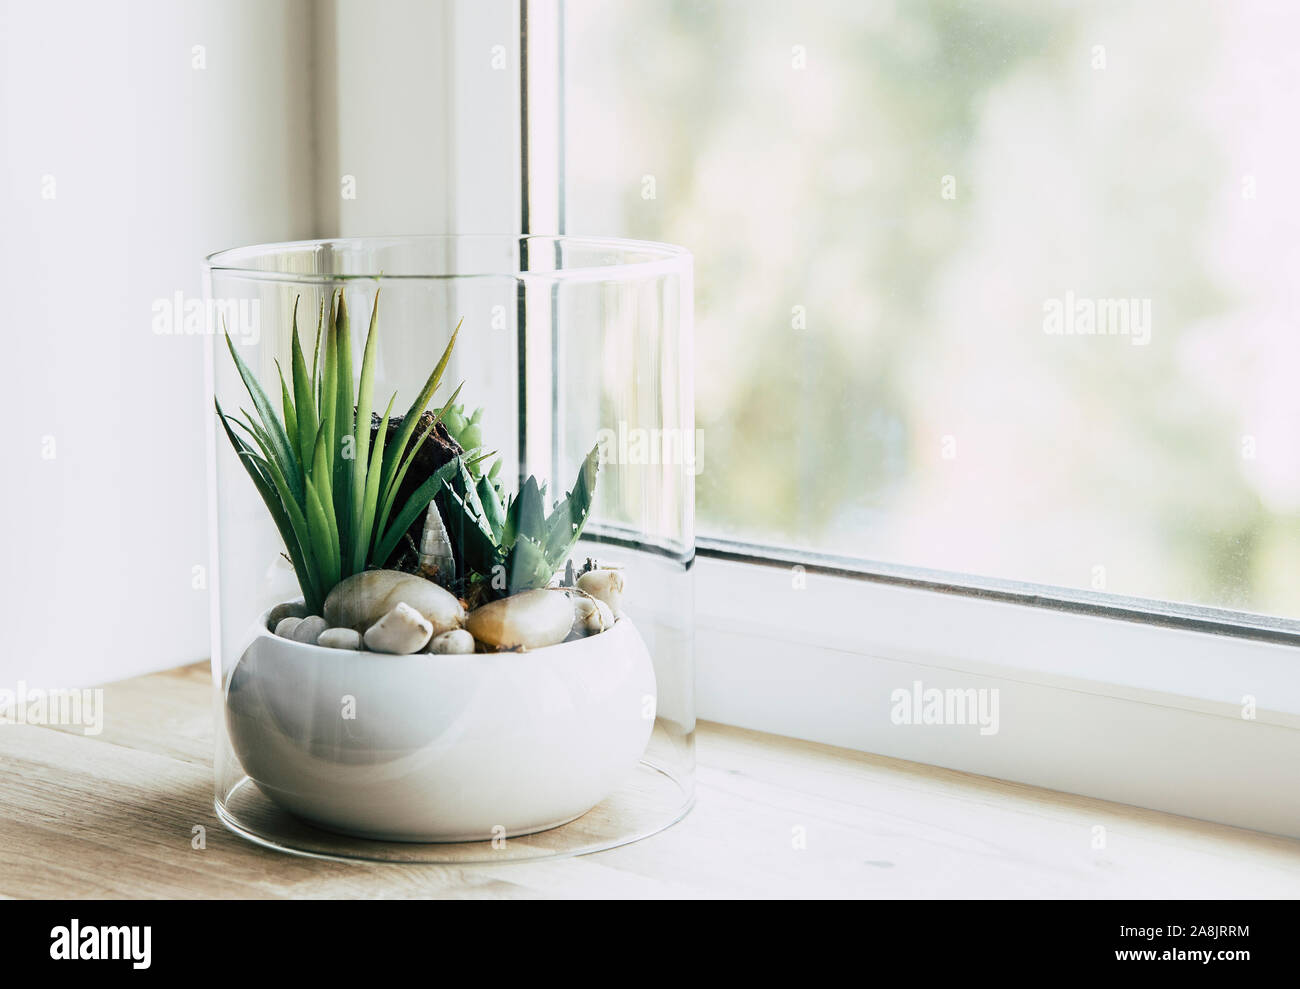 Petit verre de table moderne pour les plantes de terrarium ouvert sur l'appui de fenêtre dans la lumière naturelle. Copie de l'espace. Selective focus et blur bokeh background. Banque D'Images